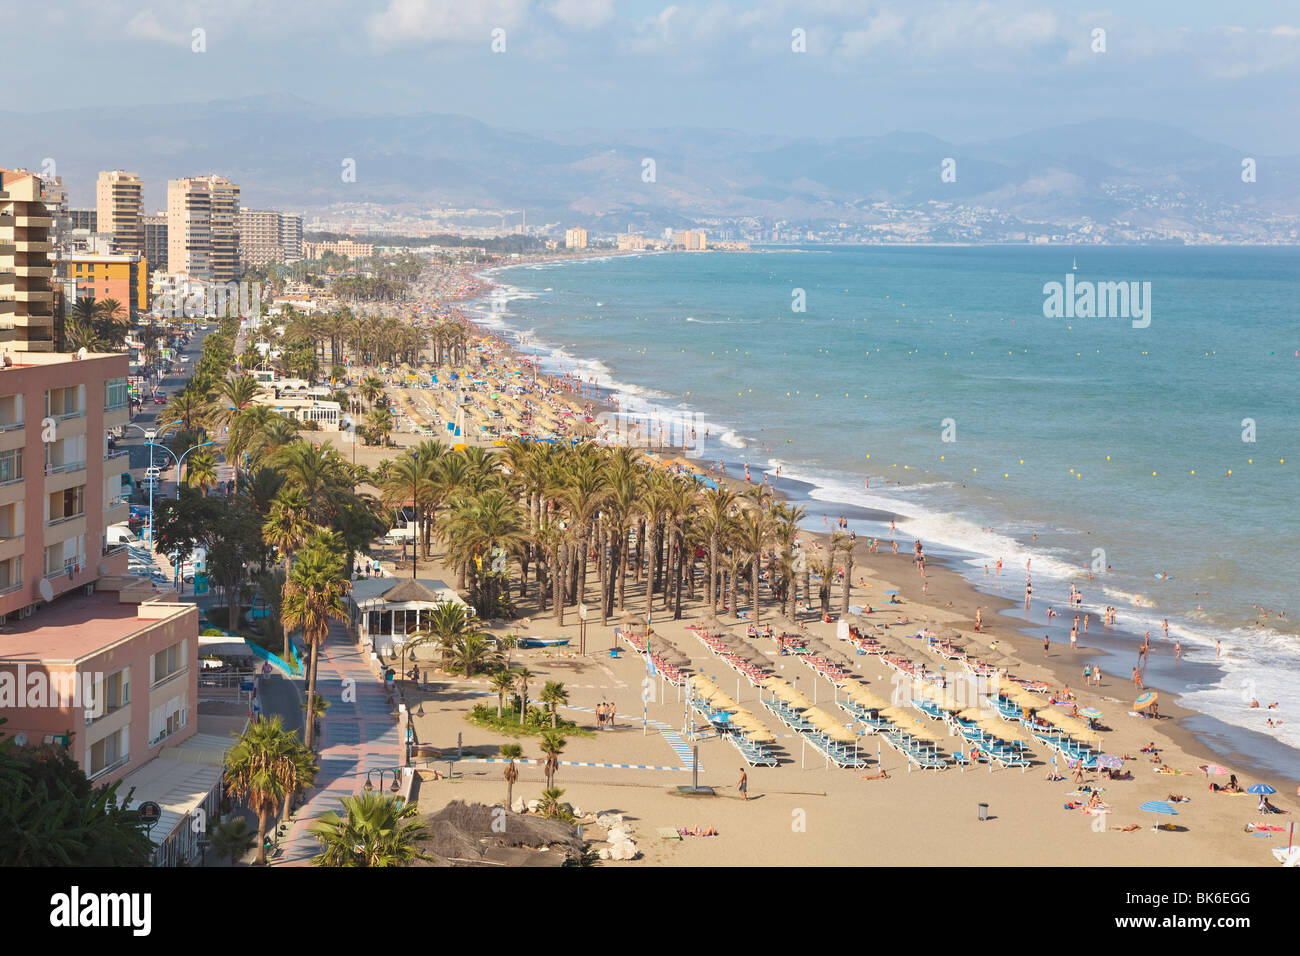 La plage de Bajondillo, Torremolinos, Costa del Sol, Malaga, Espagne Banque D'Images